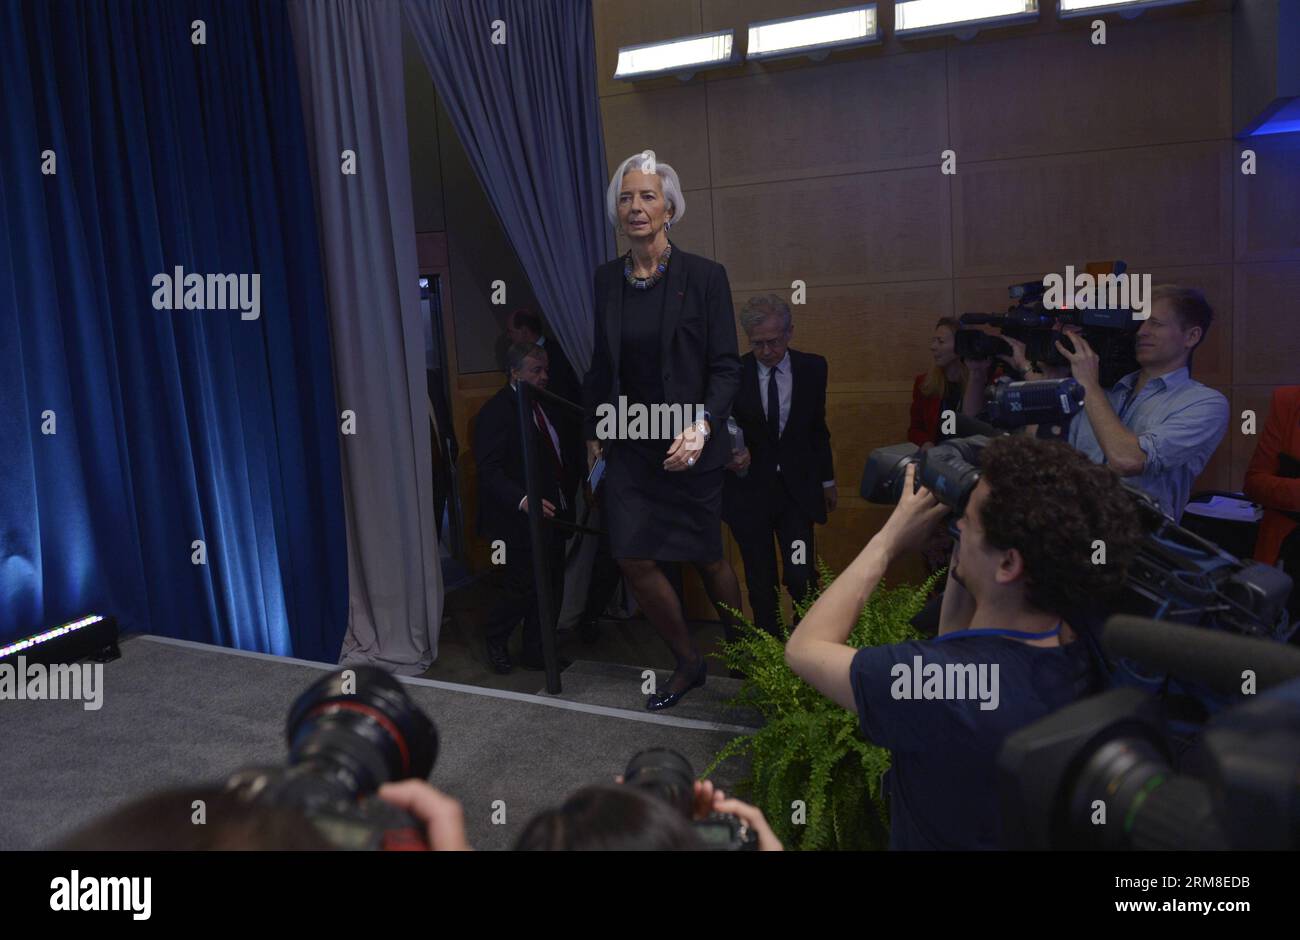 Christine Lagarde, Directora Gerente del Fondo Monetario Internacional (FMI), asiste a una conferencia de prensa antes de las reuniones de primavera del FMI y el Banco Mundial en la sede del FMI en Washington D.C., capital de Estados Unidos, el 10 de abril de 2014. Lagarde dijo el jueves que no caracterizaría el reciente aumento de la variación del yuan chino en RMB como una depreciación prevista de la moneda, sino un movimiento en la dirección de la internacionalización del yuan. (Xinhua/Yin Bogu) (zj) EE.UU.-WASHINGTONG D.C.-FMI-BANCO MUNDIAL-REUNIONES DE PRIMAVERA PUBLICATIONxNOTxINxCHN Washington D. C. Foto de stock